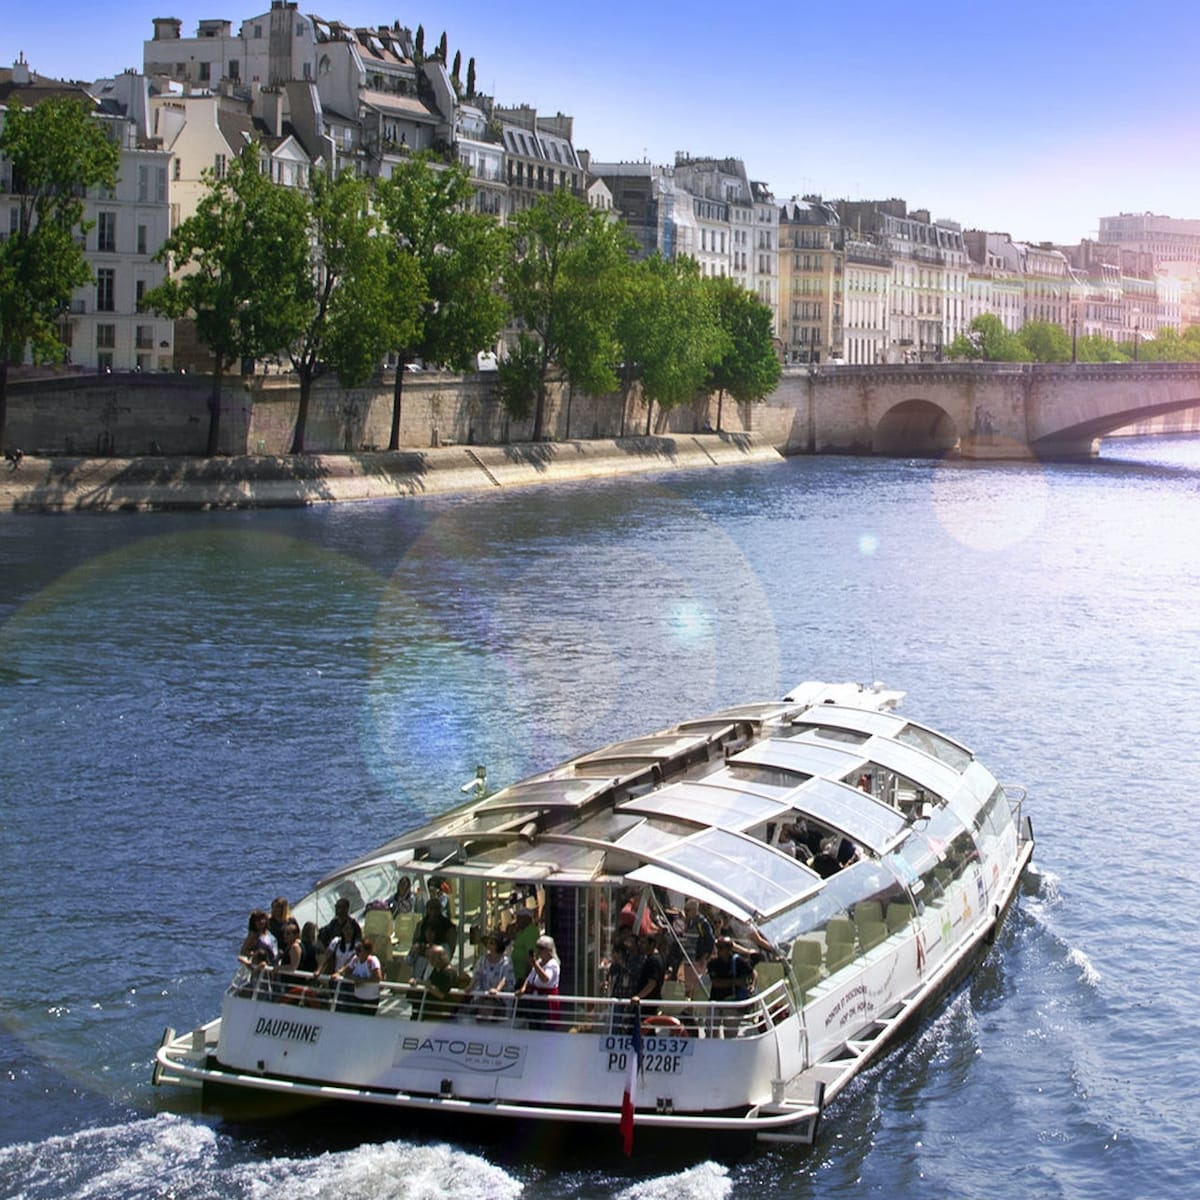 batobus-paris-riverboat-shuttle-service_1